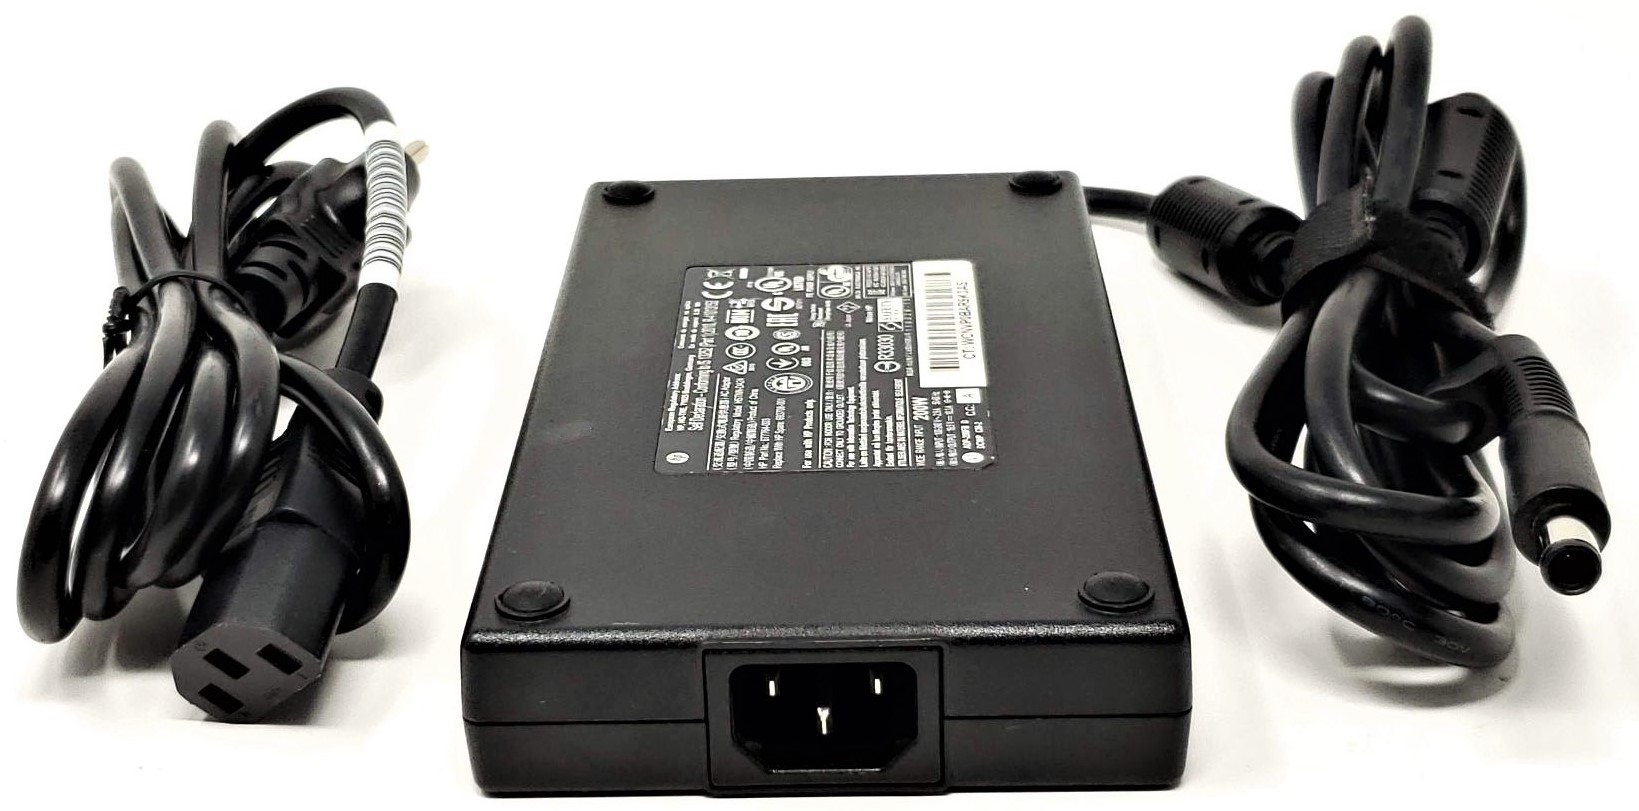 HP A200A001L - 200W 19.5V 10.3A 5mm Tip AC Adapter Charger for HP